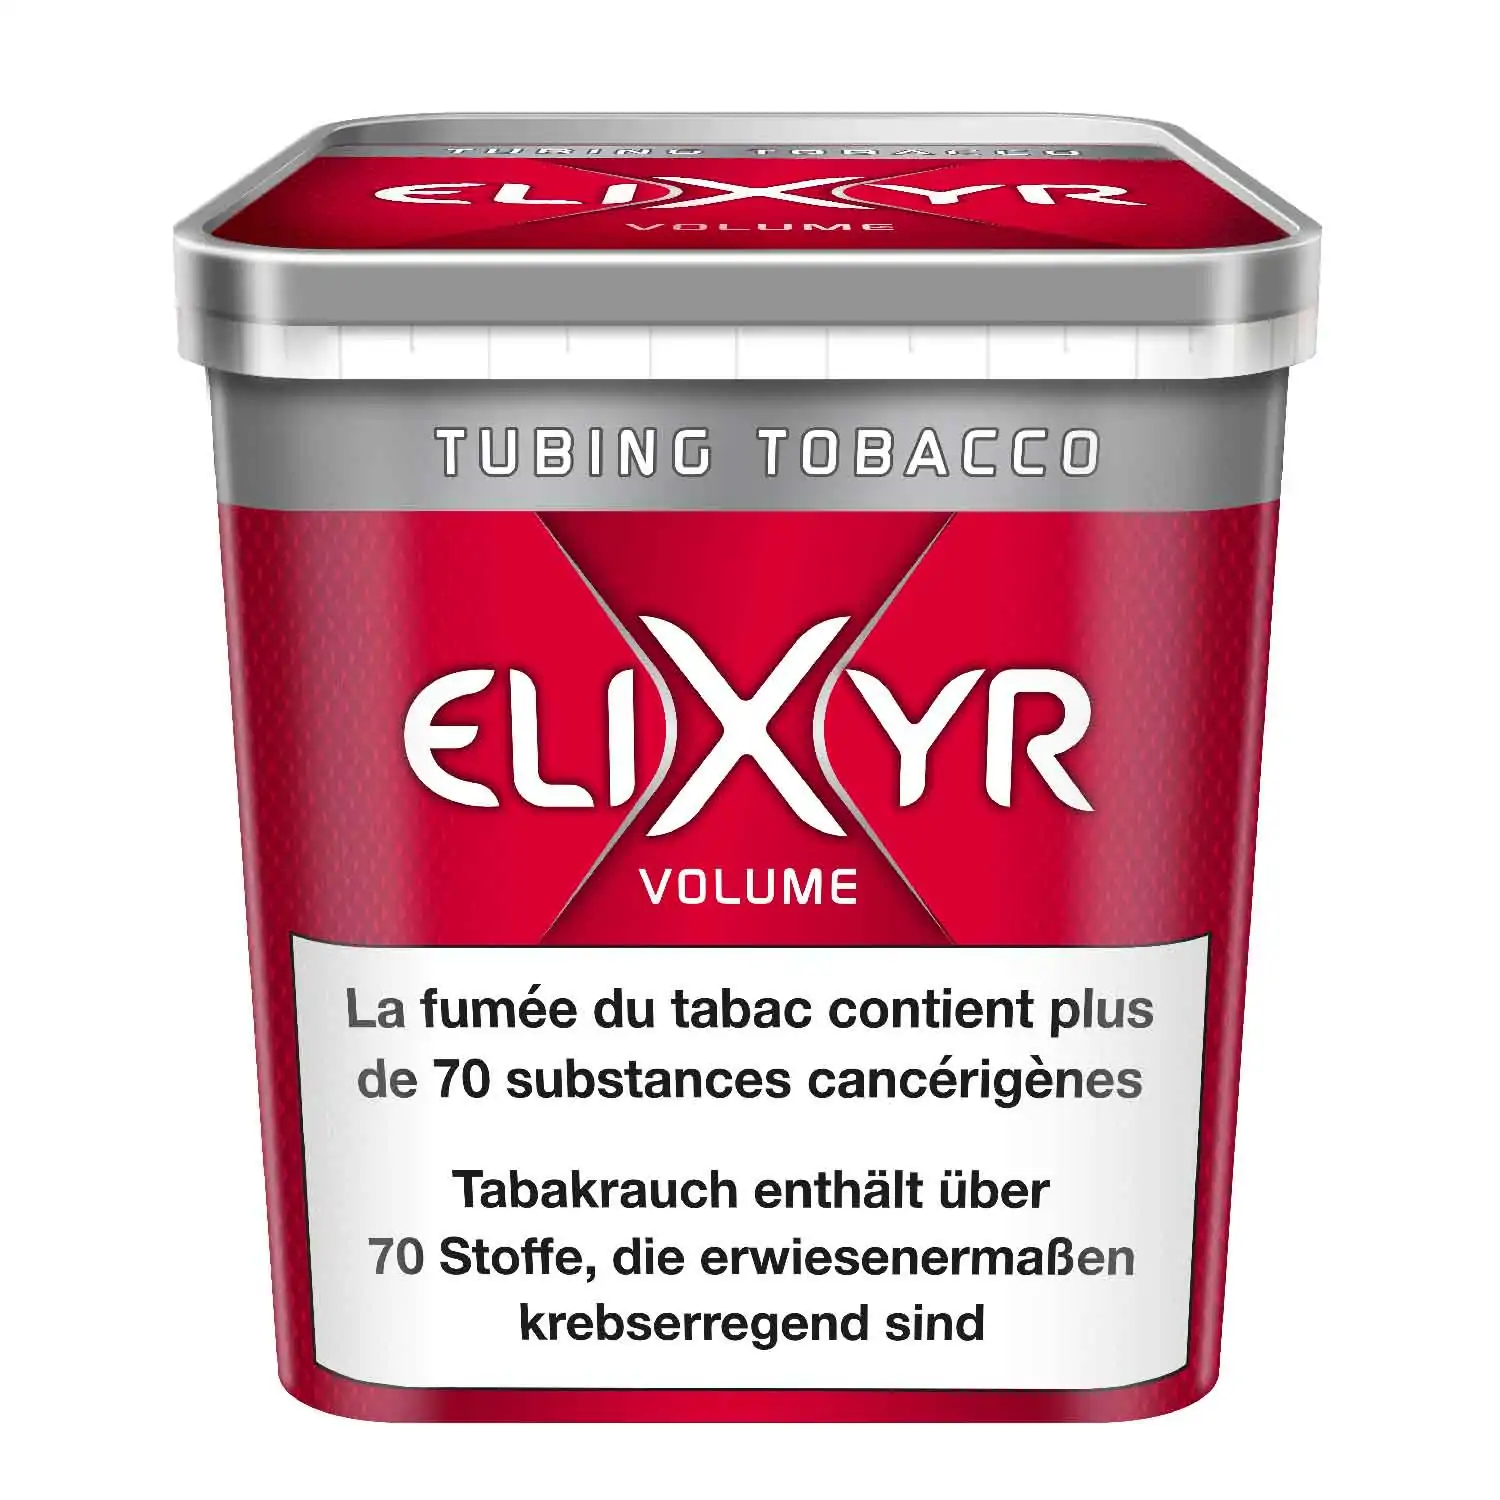 Elixyr volume maxx 850g - Buy at Real Tobacco